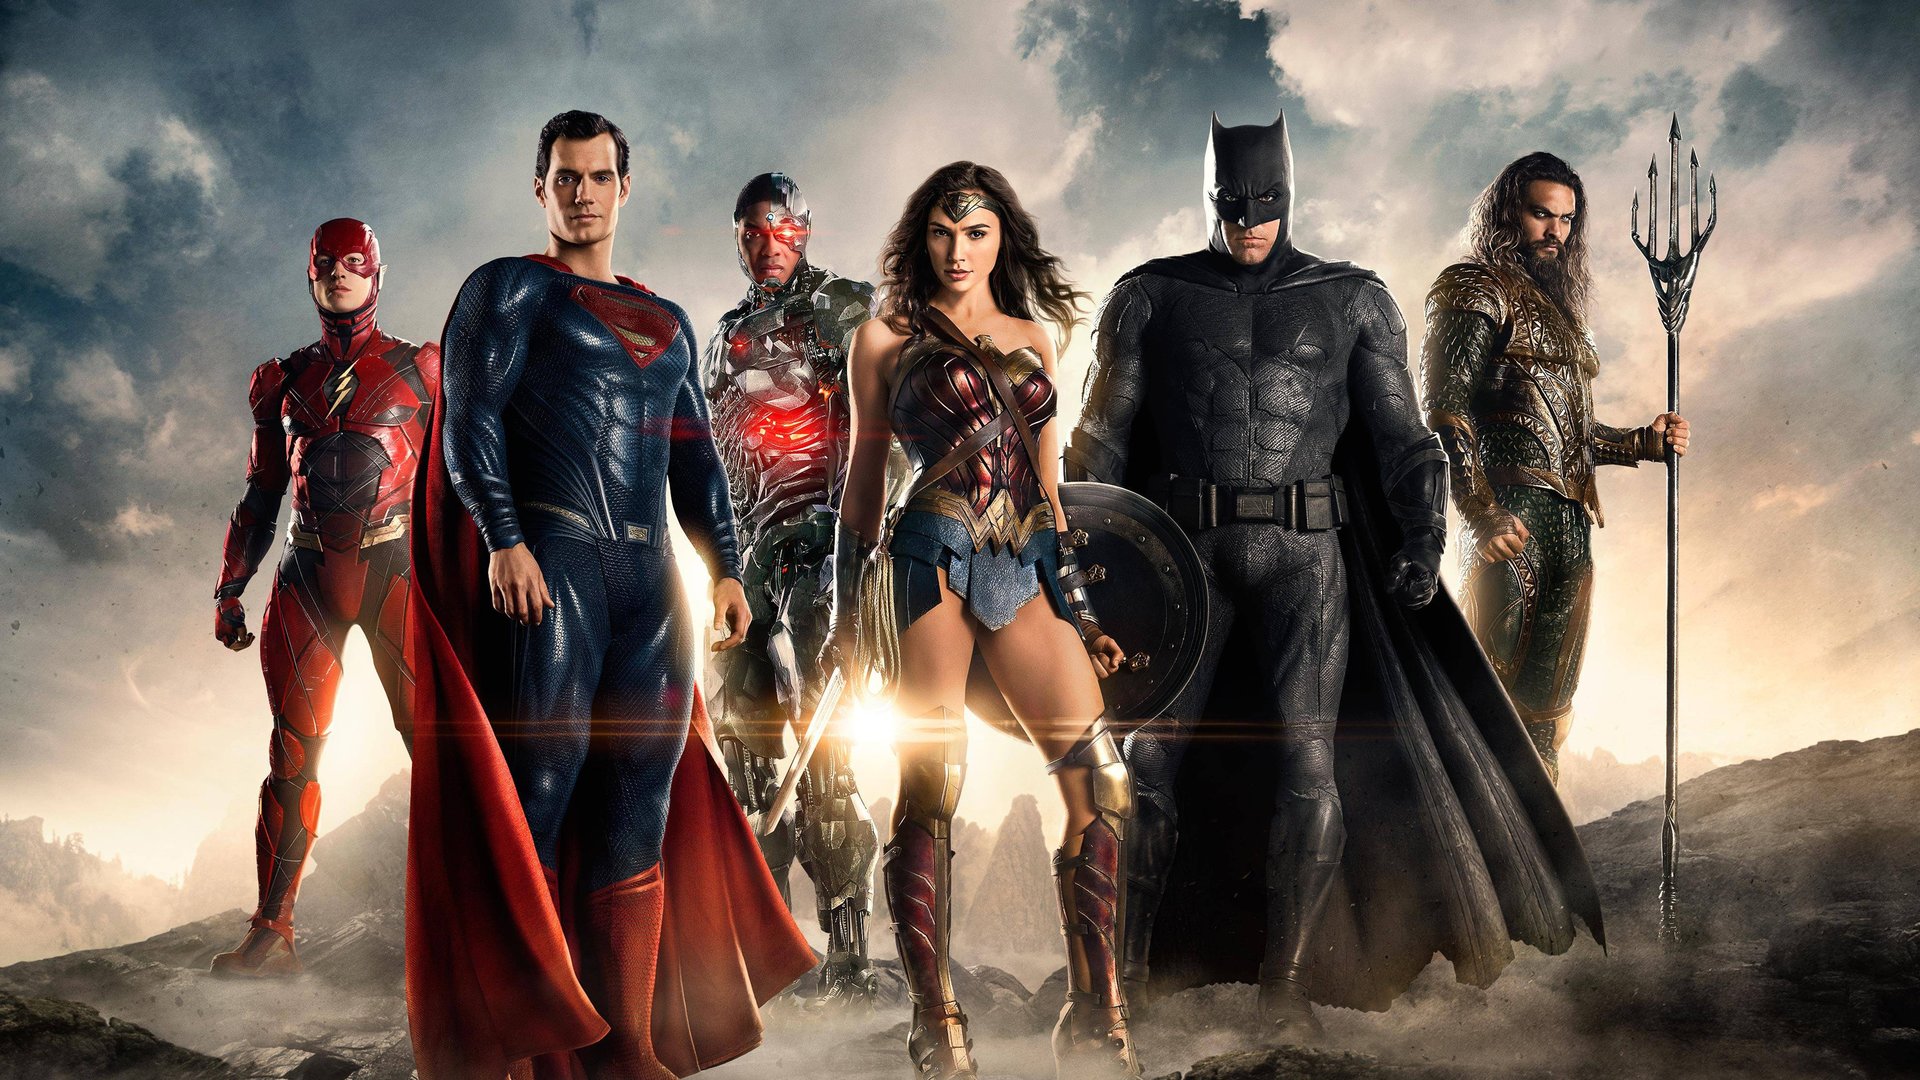 #„Zack Snyder's Justice League": Green-Lantern-Star enthüllt Bild seines gestrichenen DC-Auftritts